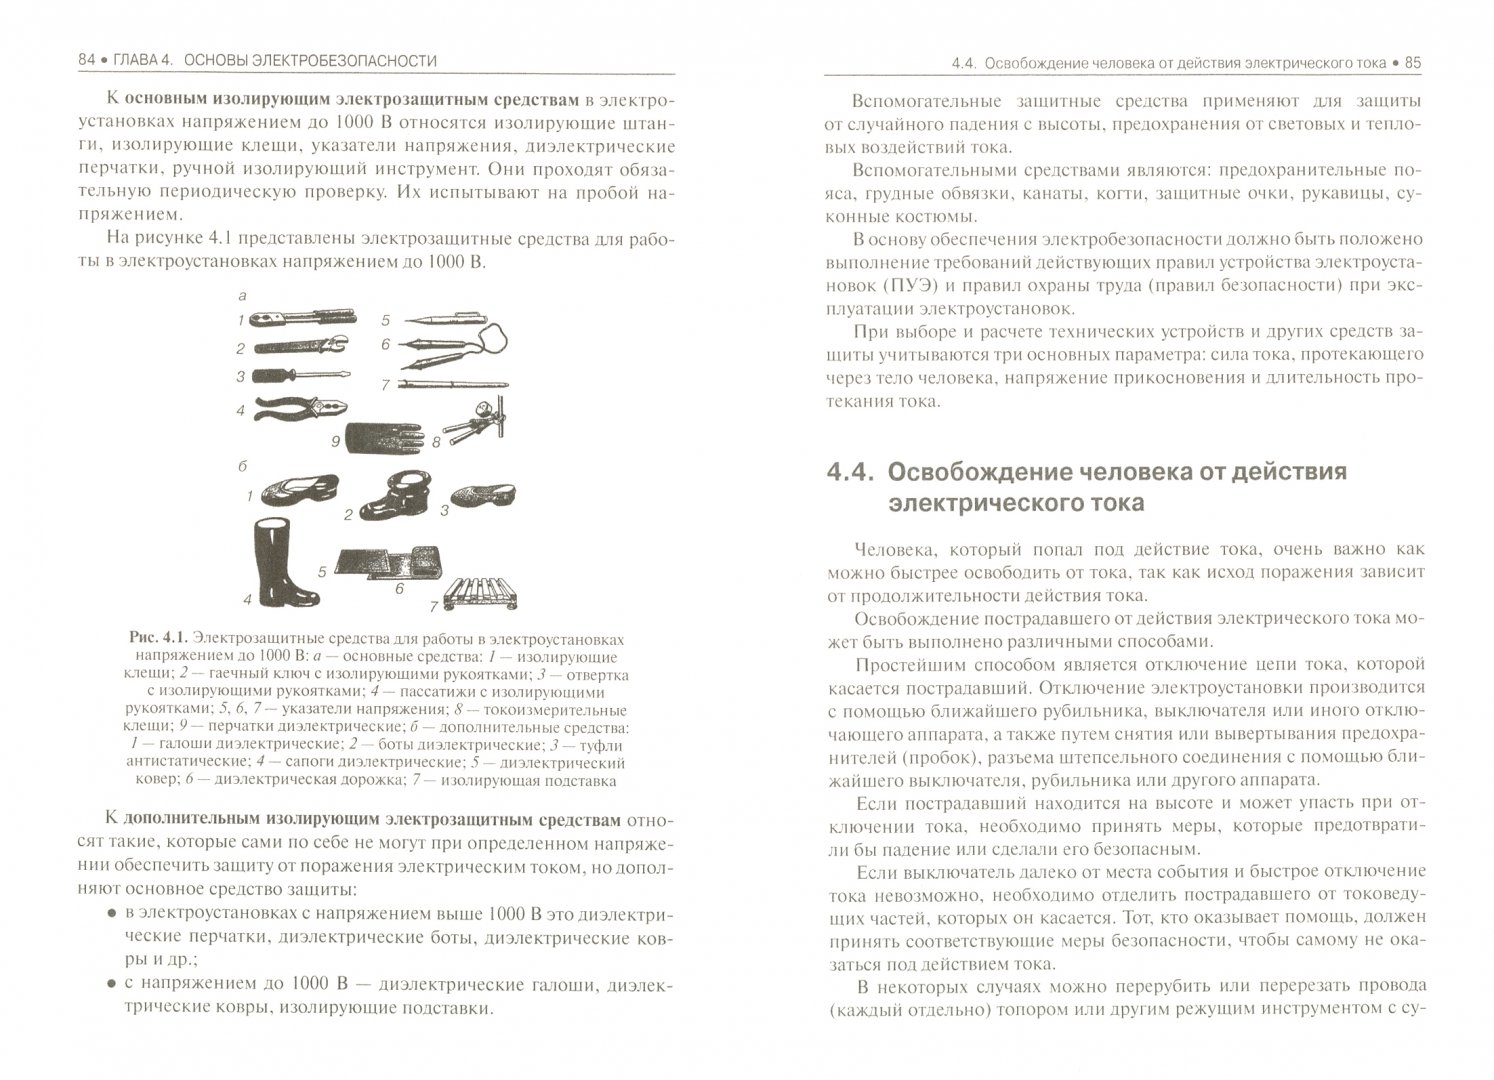 Иллюстрация 1 из 7 для Охрана труда. Учебник - Косолапова, Прокопенко | Лабиринт - книги. Источник: Лабиринт